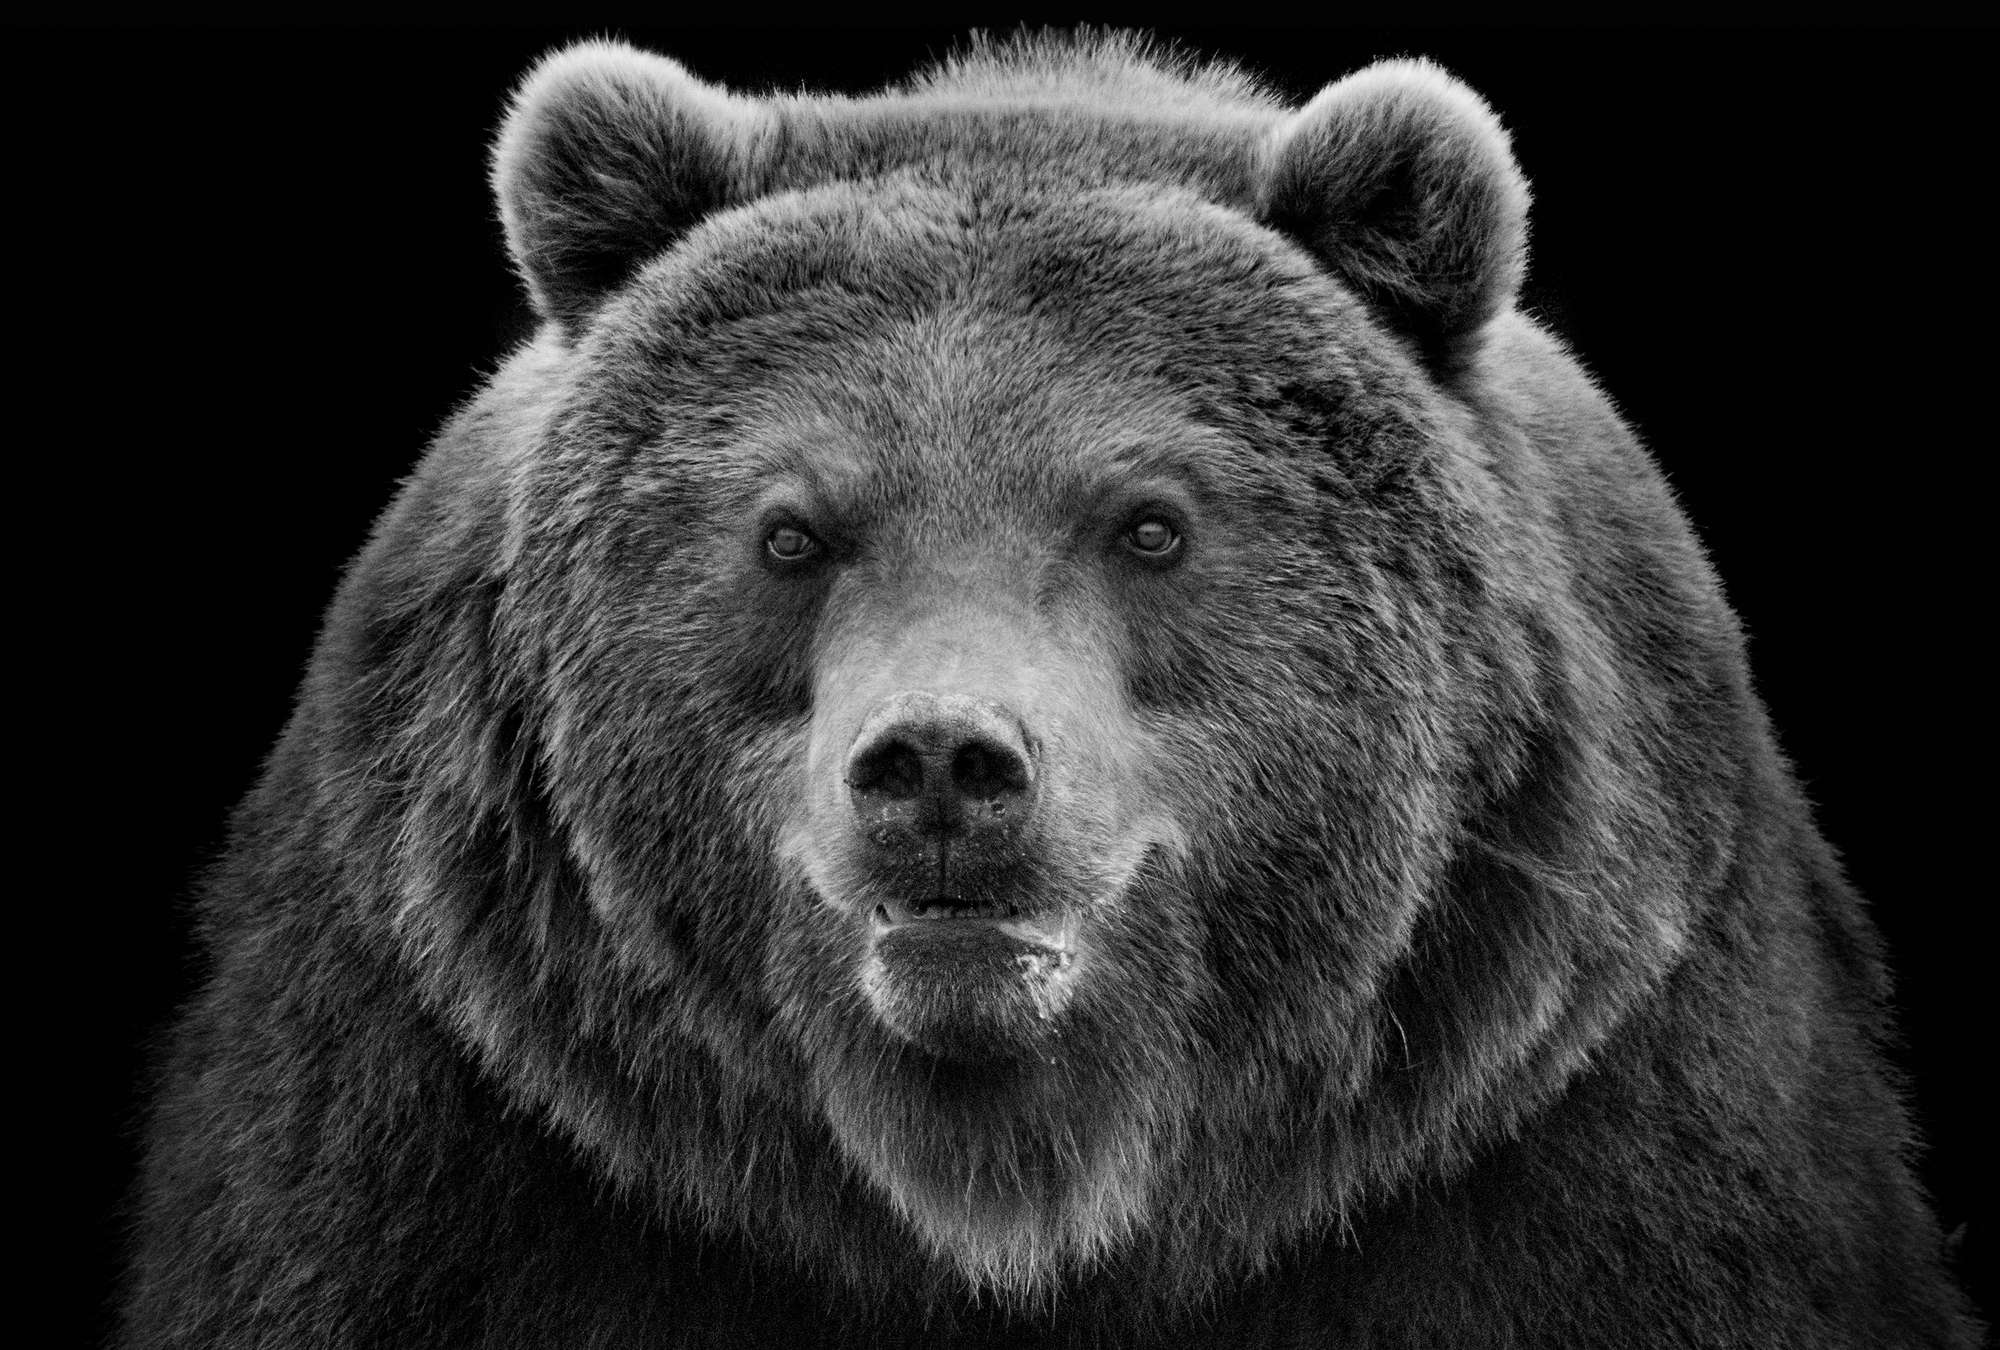             Muurschildering Sterke grizzlybeer tegen een zwarte achtergrond
        